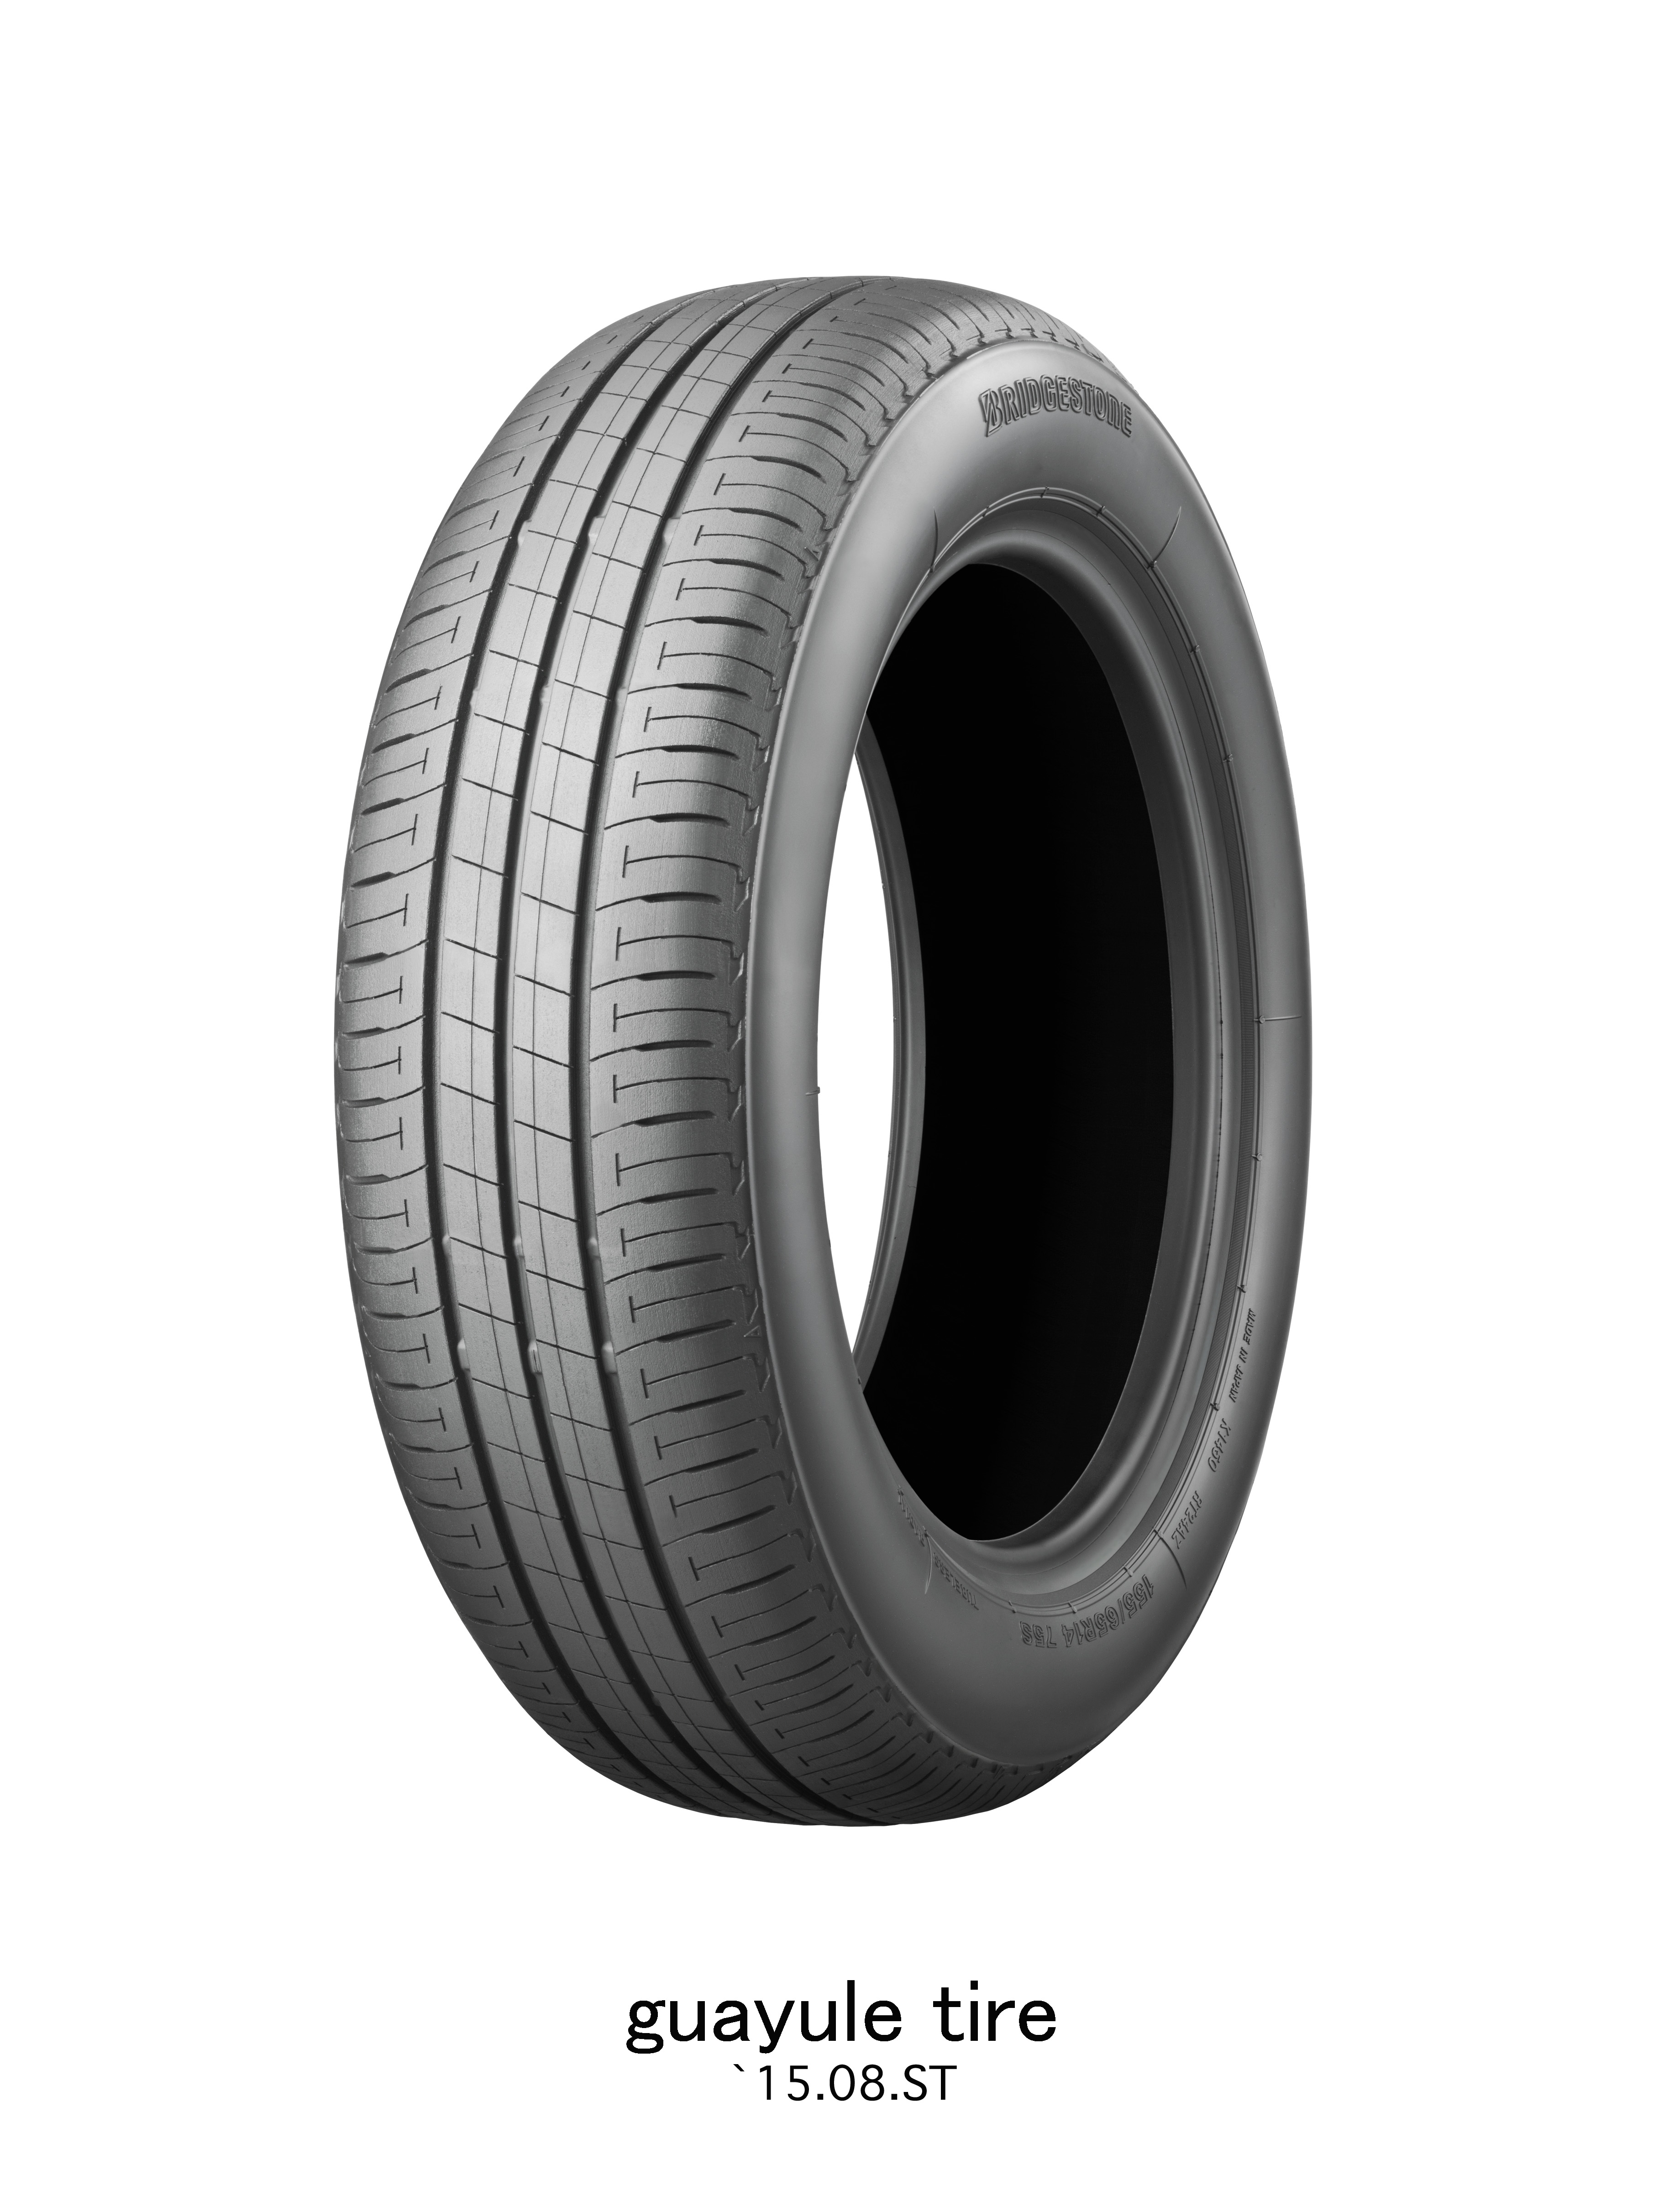 Bridgestone produce neumáticos utilizando componentes de caucho natural del Guayule